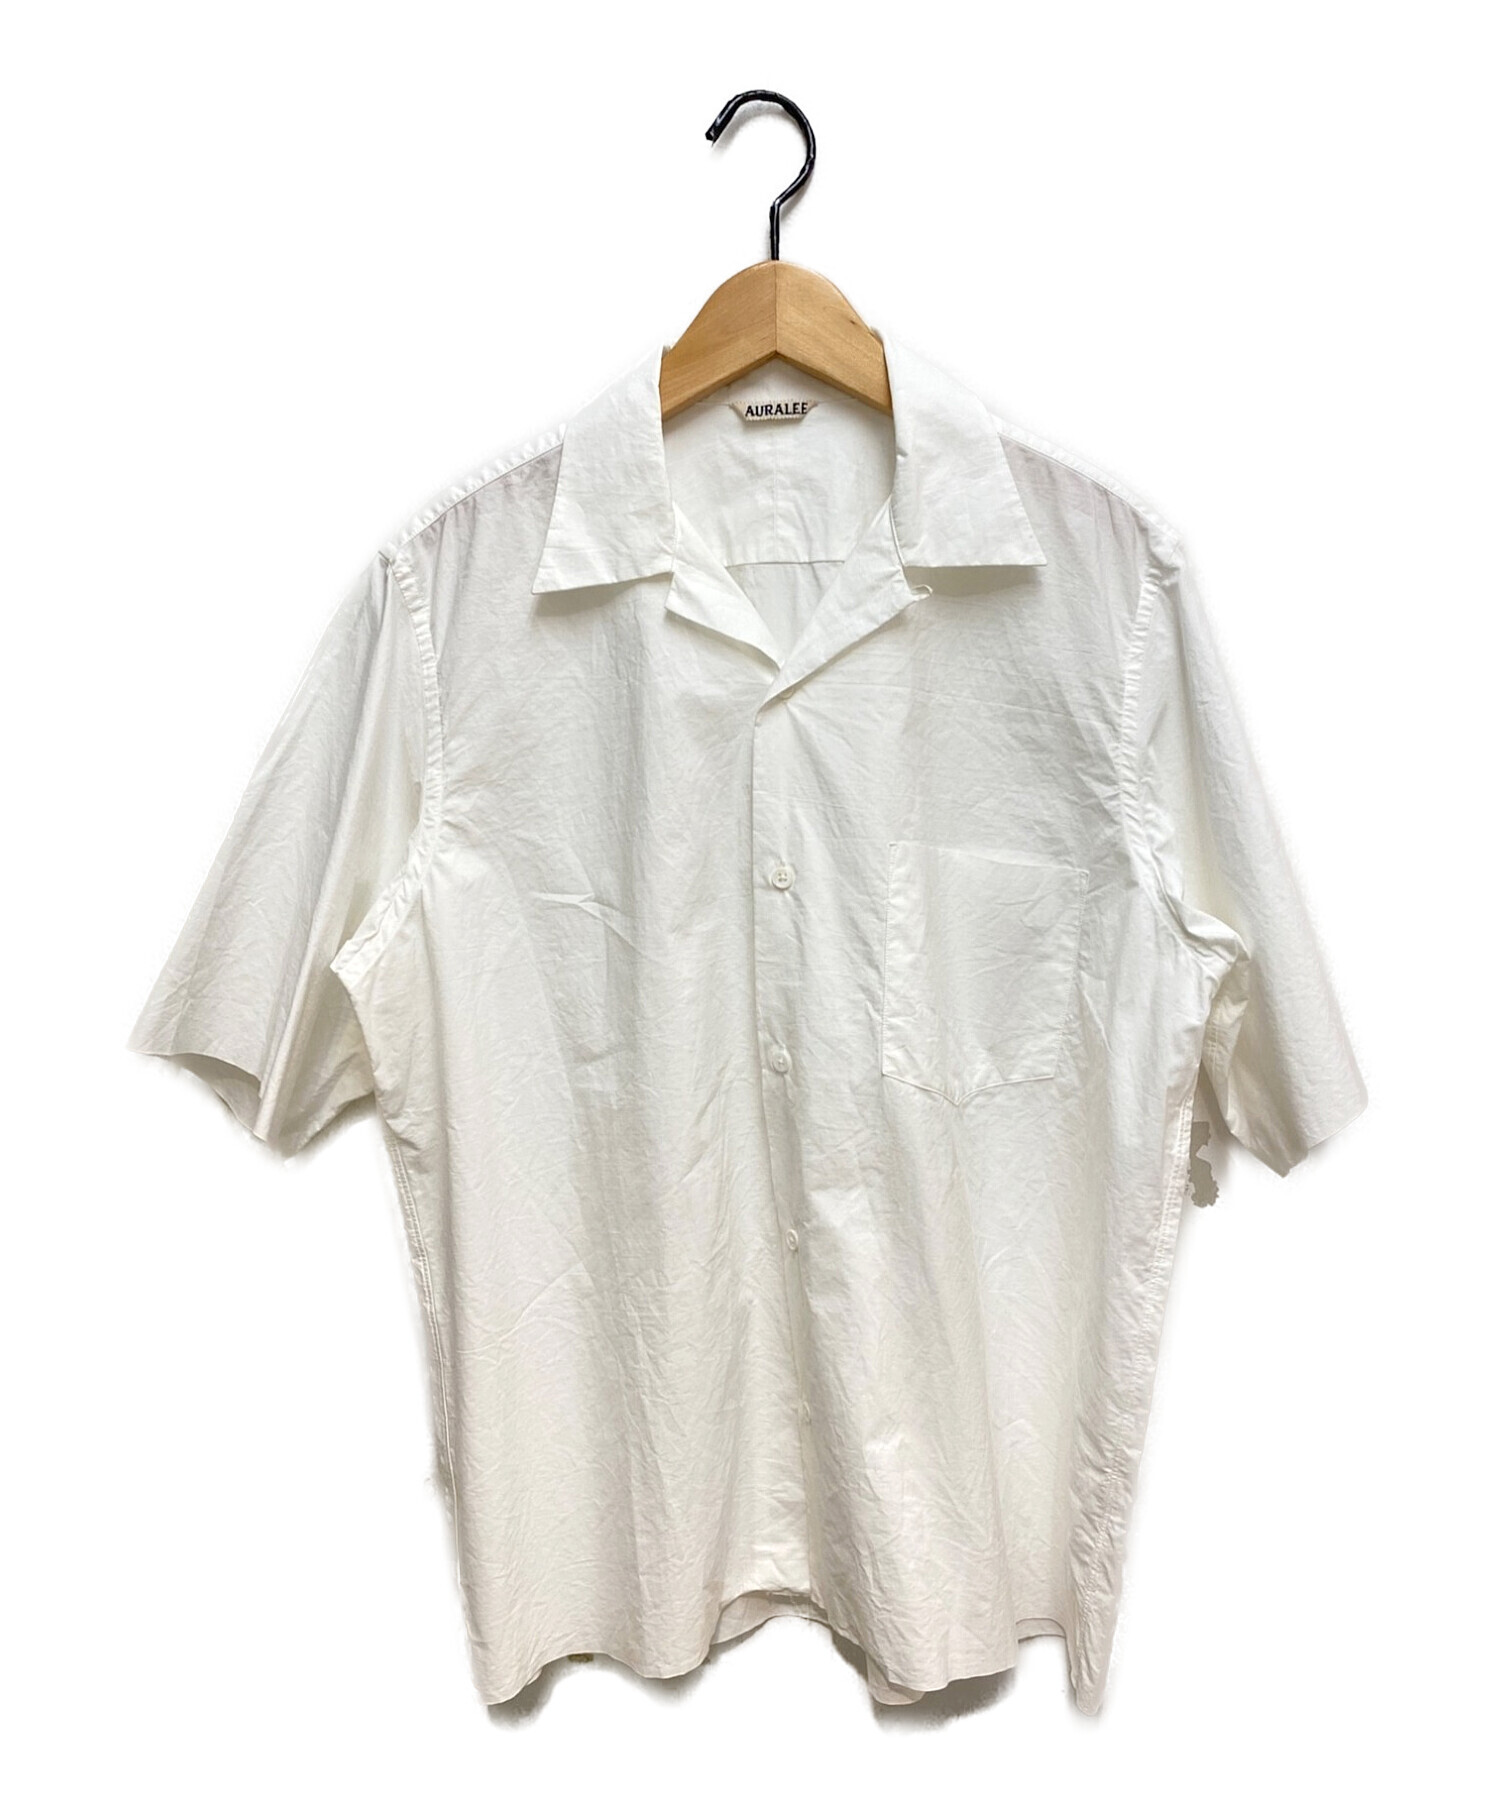 AURALEE (オーラリー) オープンカラーシャツ ホワイト サイズ:3